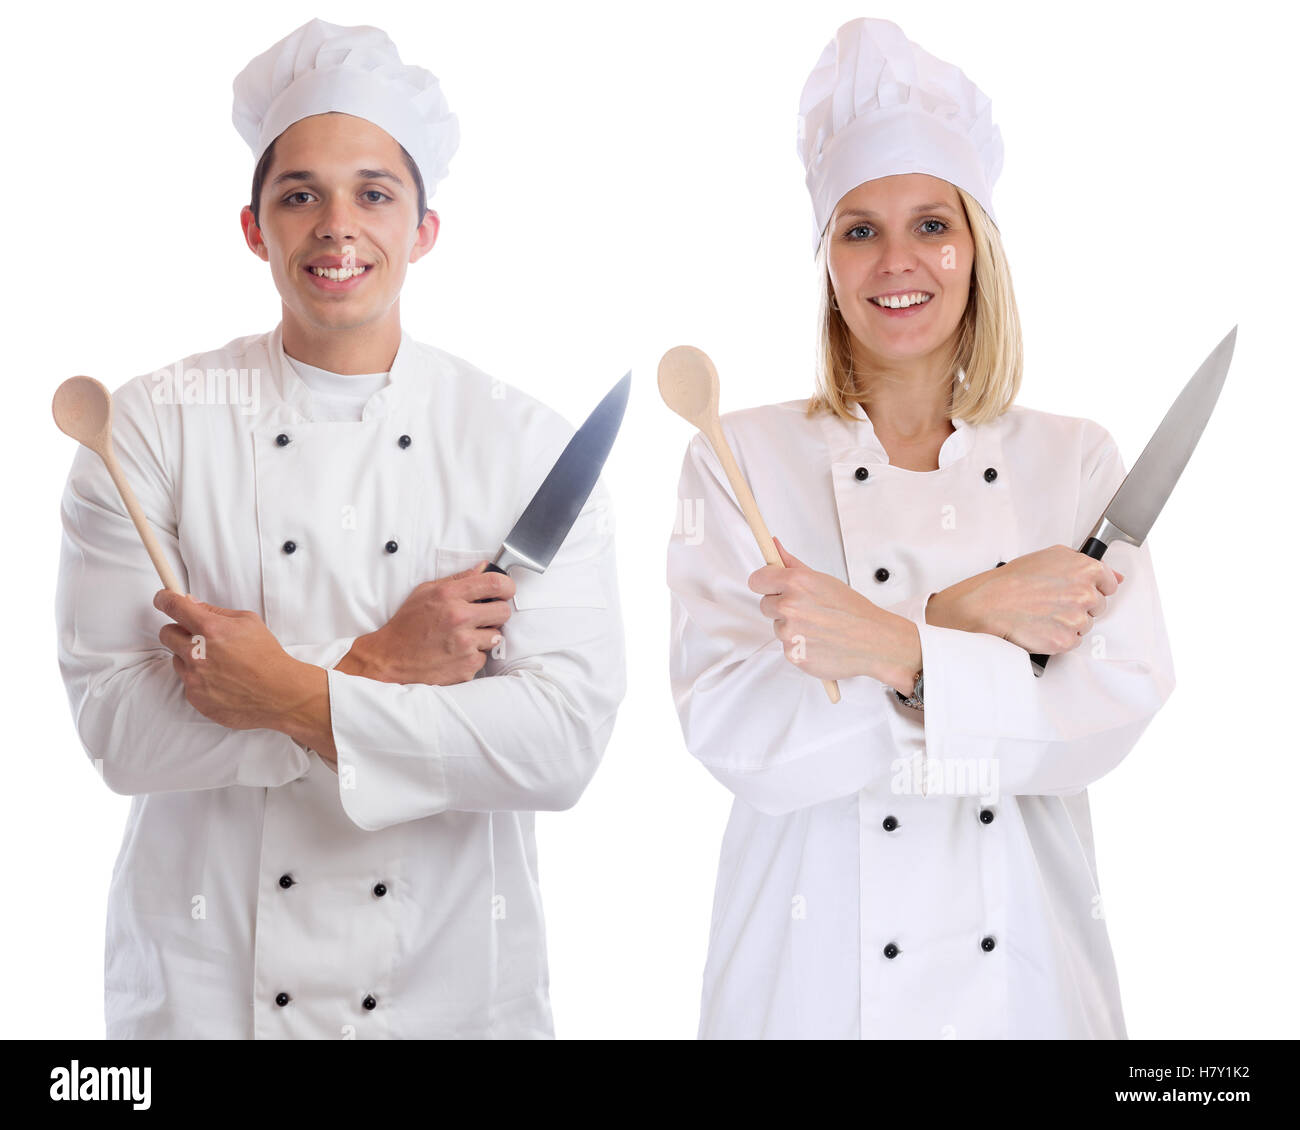 Apprenti cuisinier stagiaire stagiaires cuisiniers cuisiner avec les jeunes d'emploi Couteau isolé sur fond blanc Banque D'Images